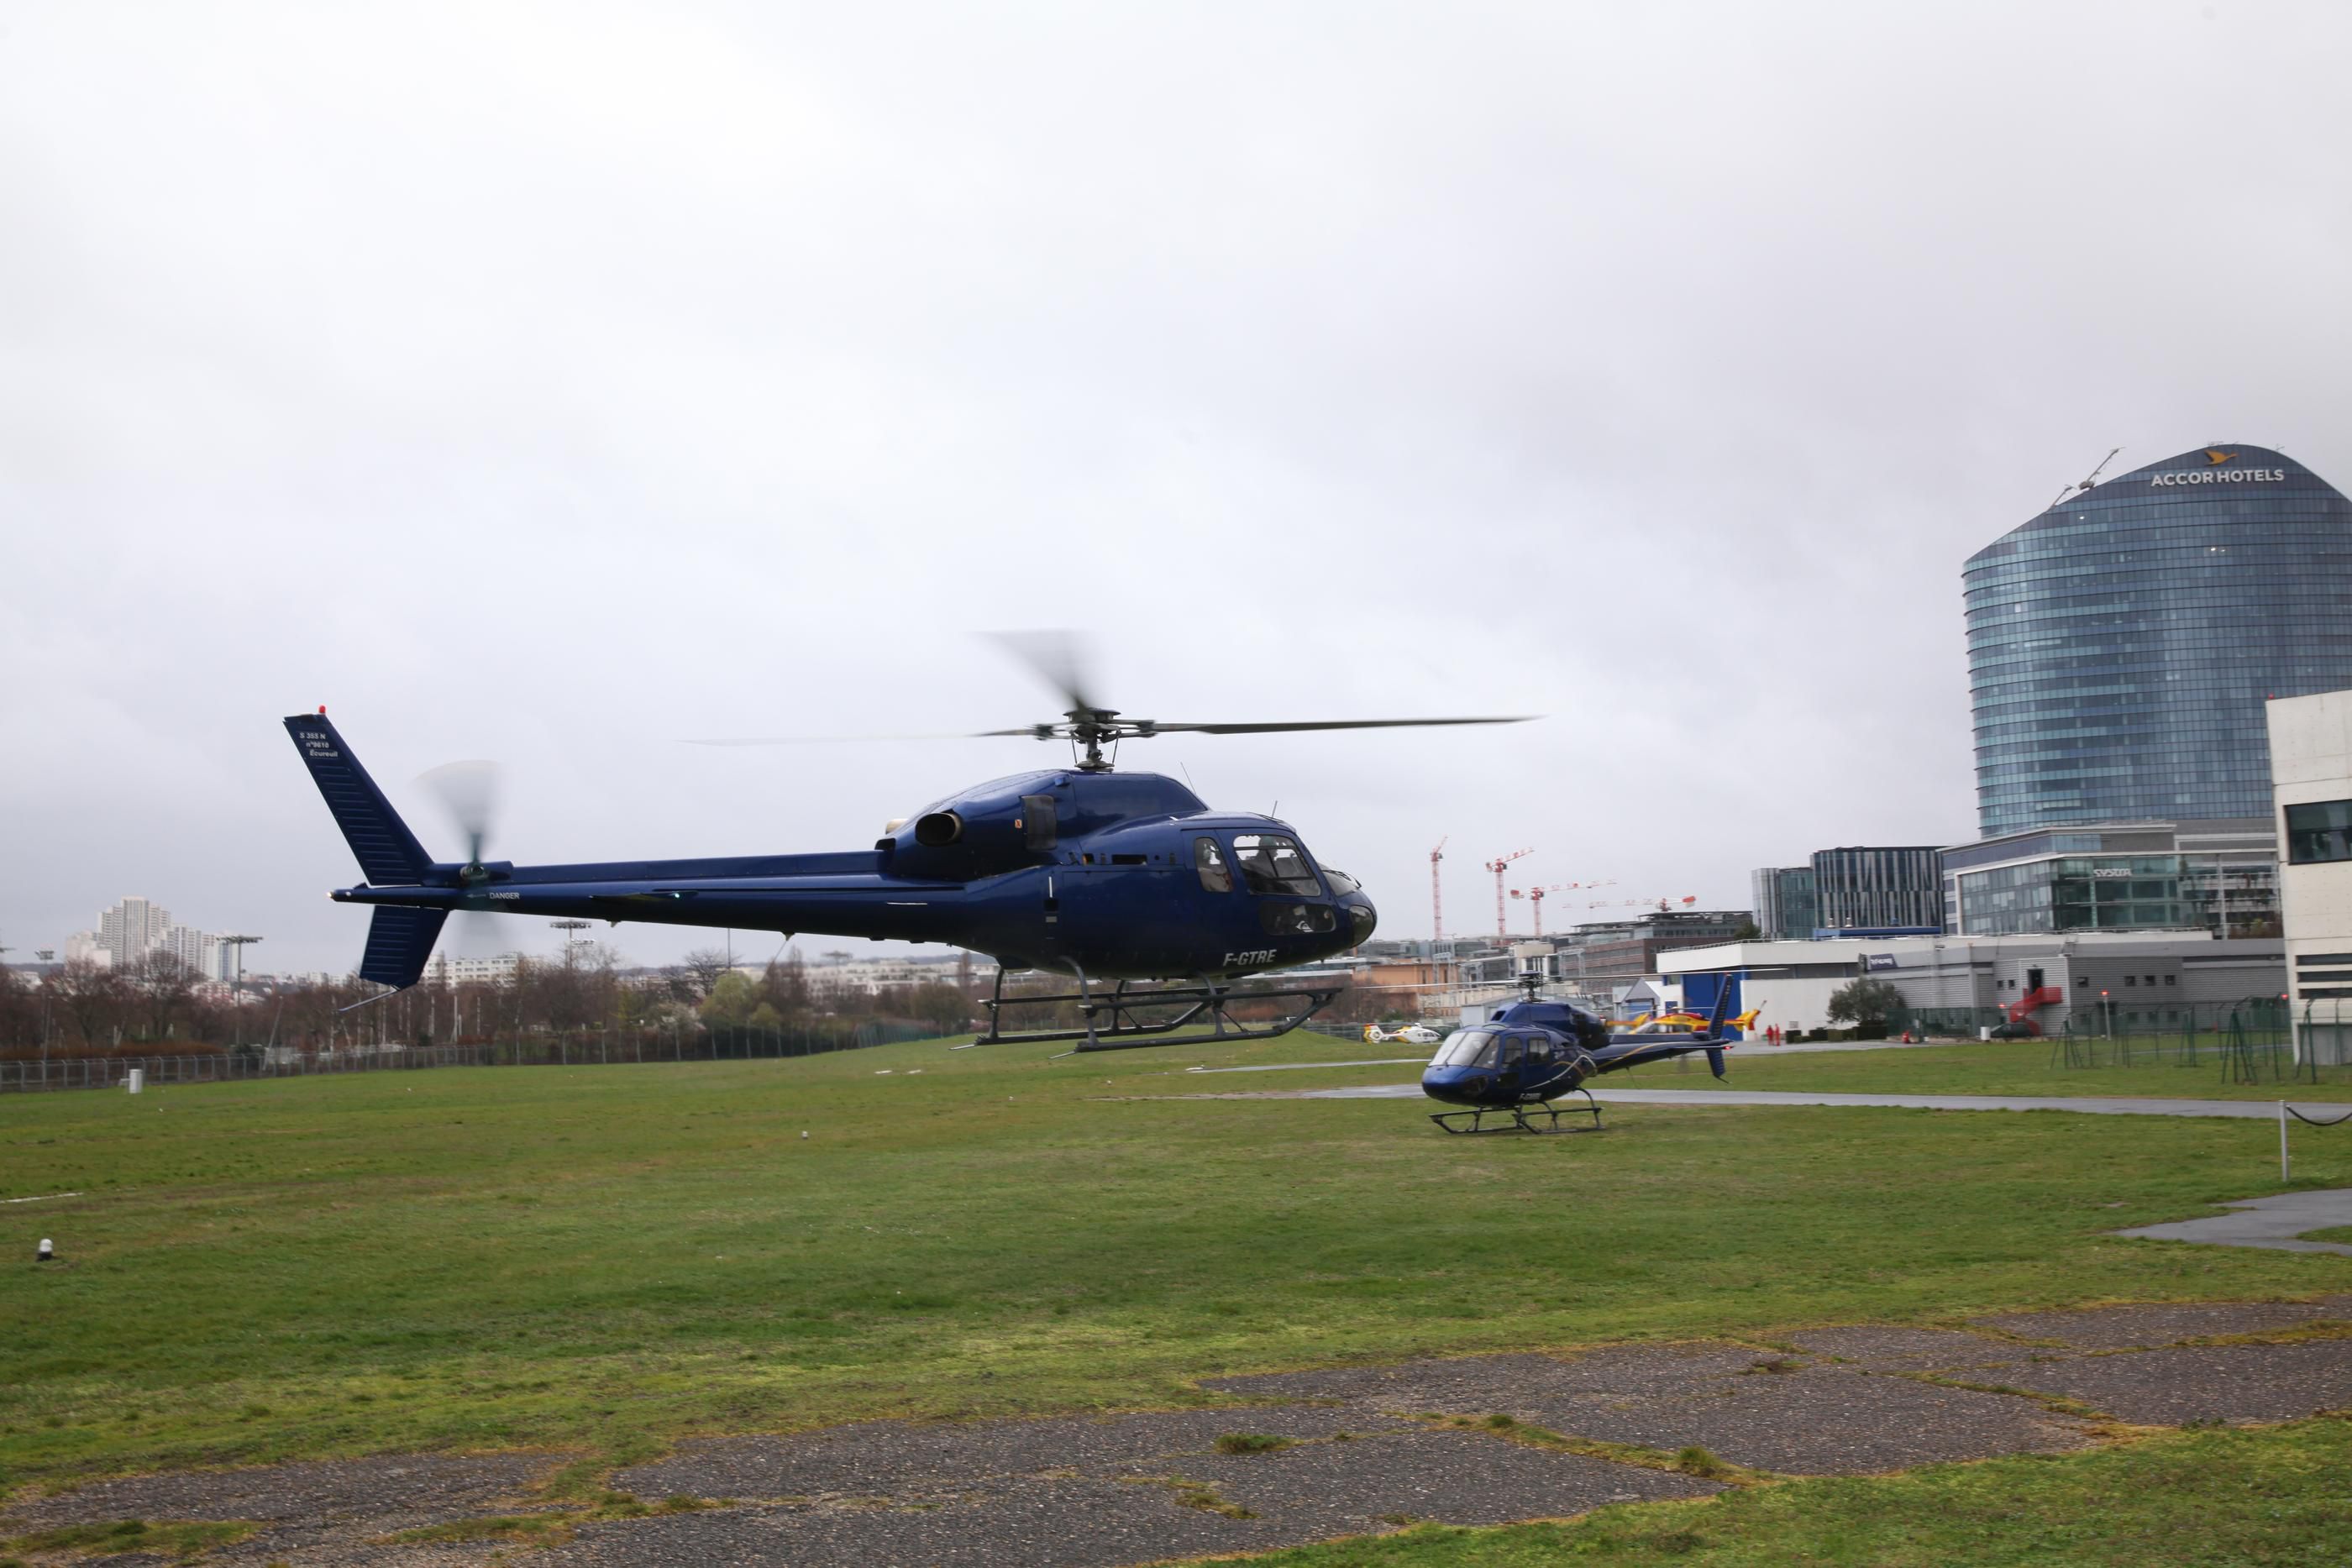 L'héliport de Paris-Issy-les-Moulineaux accueille de nombreux vols d'hélicoptères chaque jour, occasionnant des nuisances pour les riverains. LP/Olivier Boitet